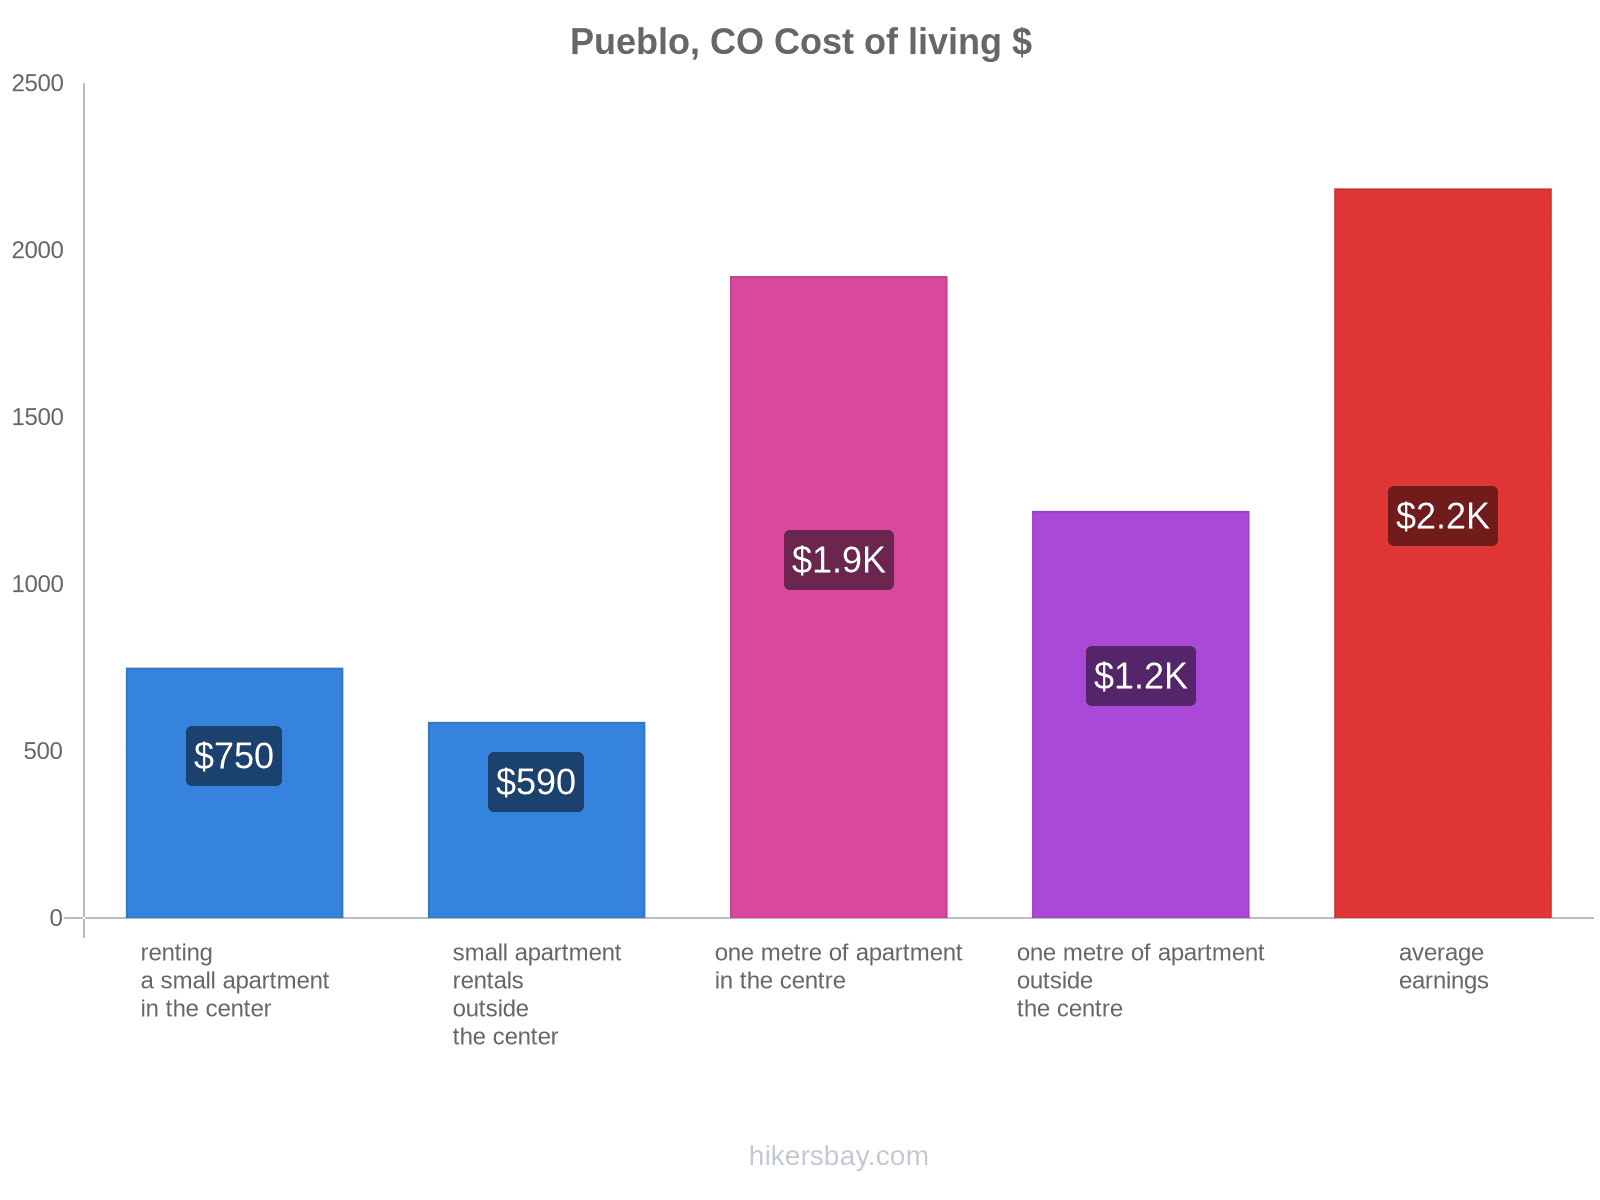 Pueblo, CO cost of living hikersbay.com